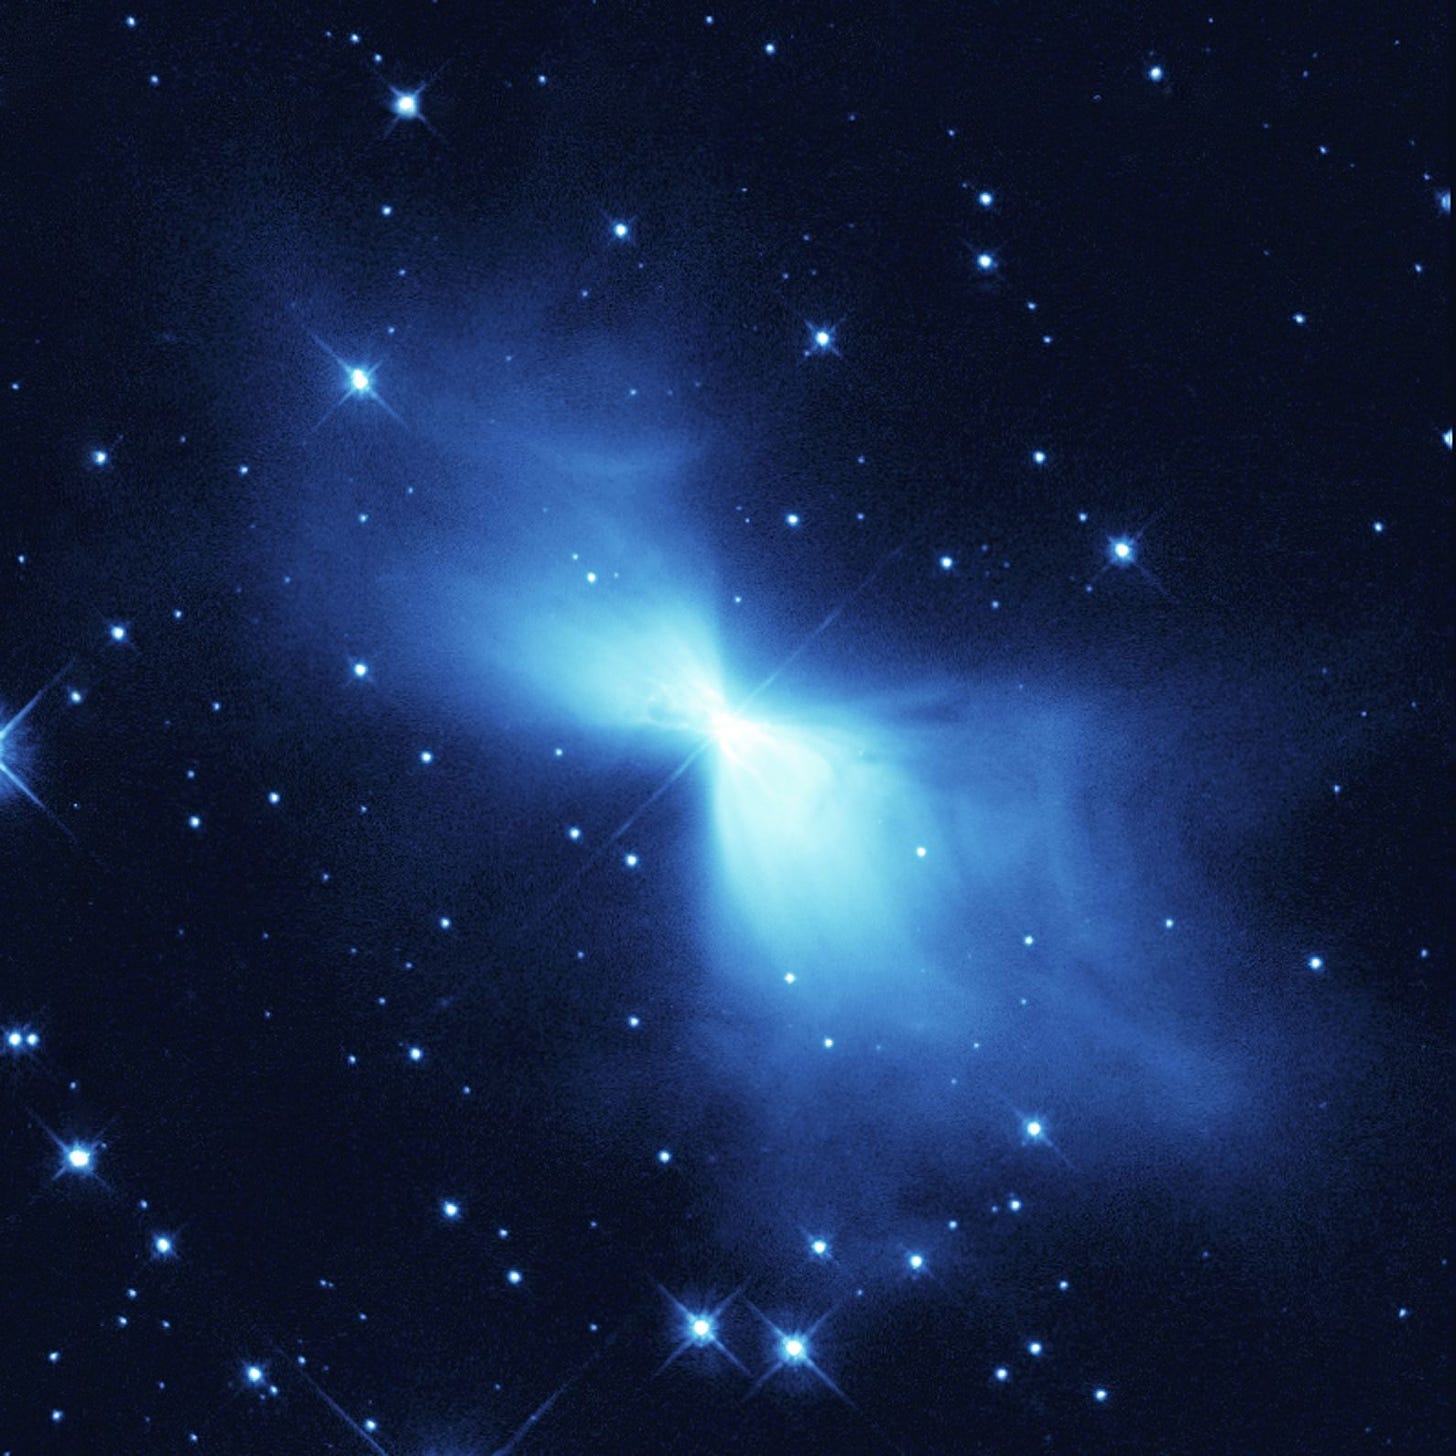 Boomerang Nebula - Wikipedia